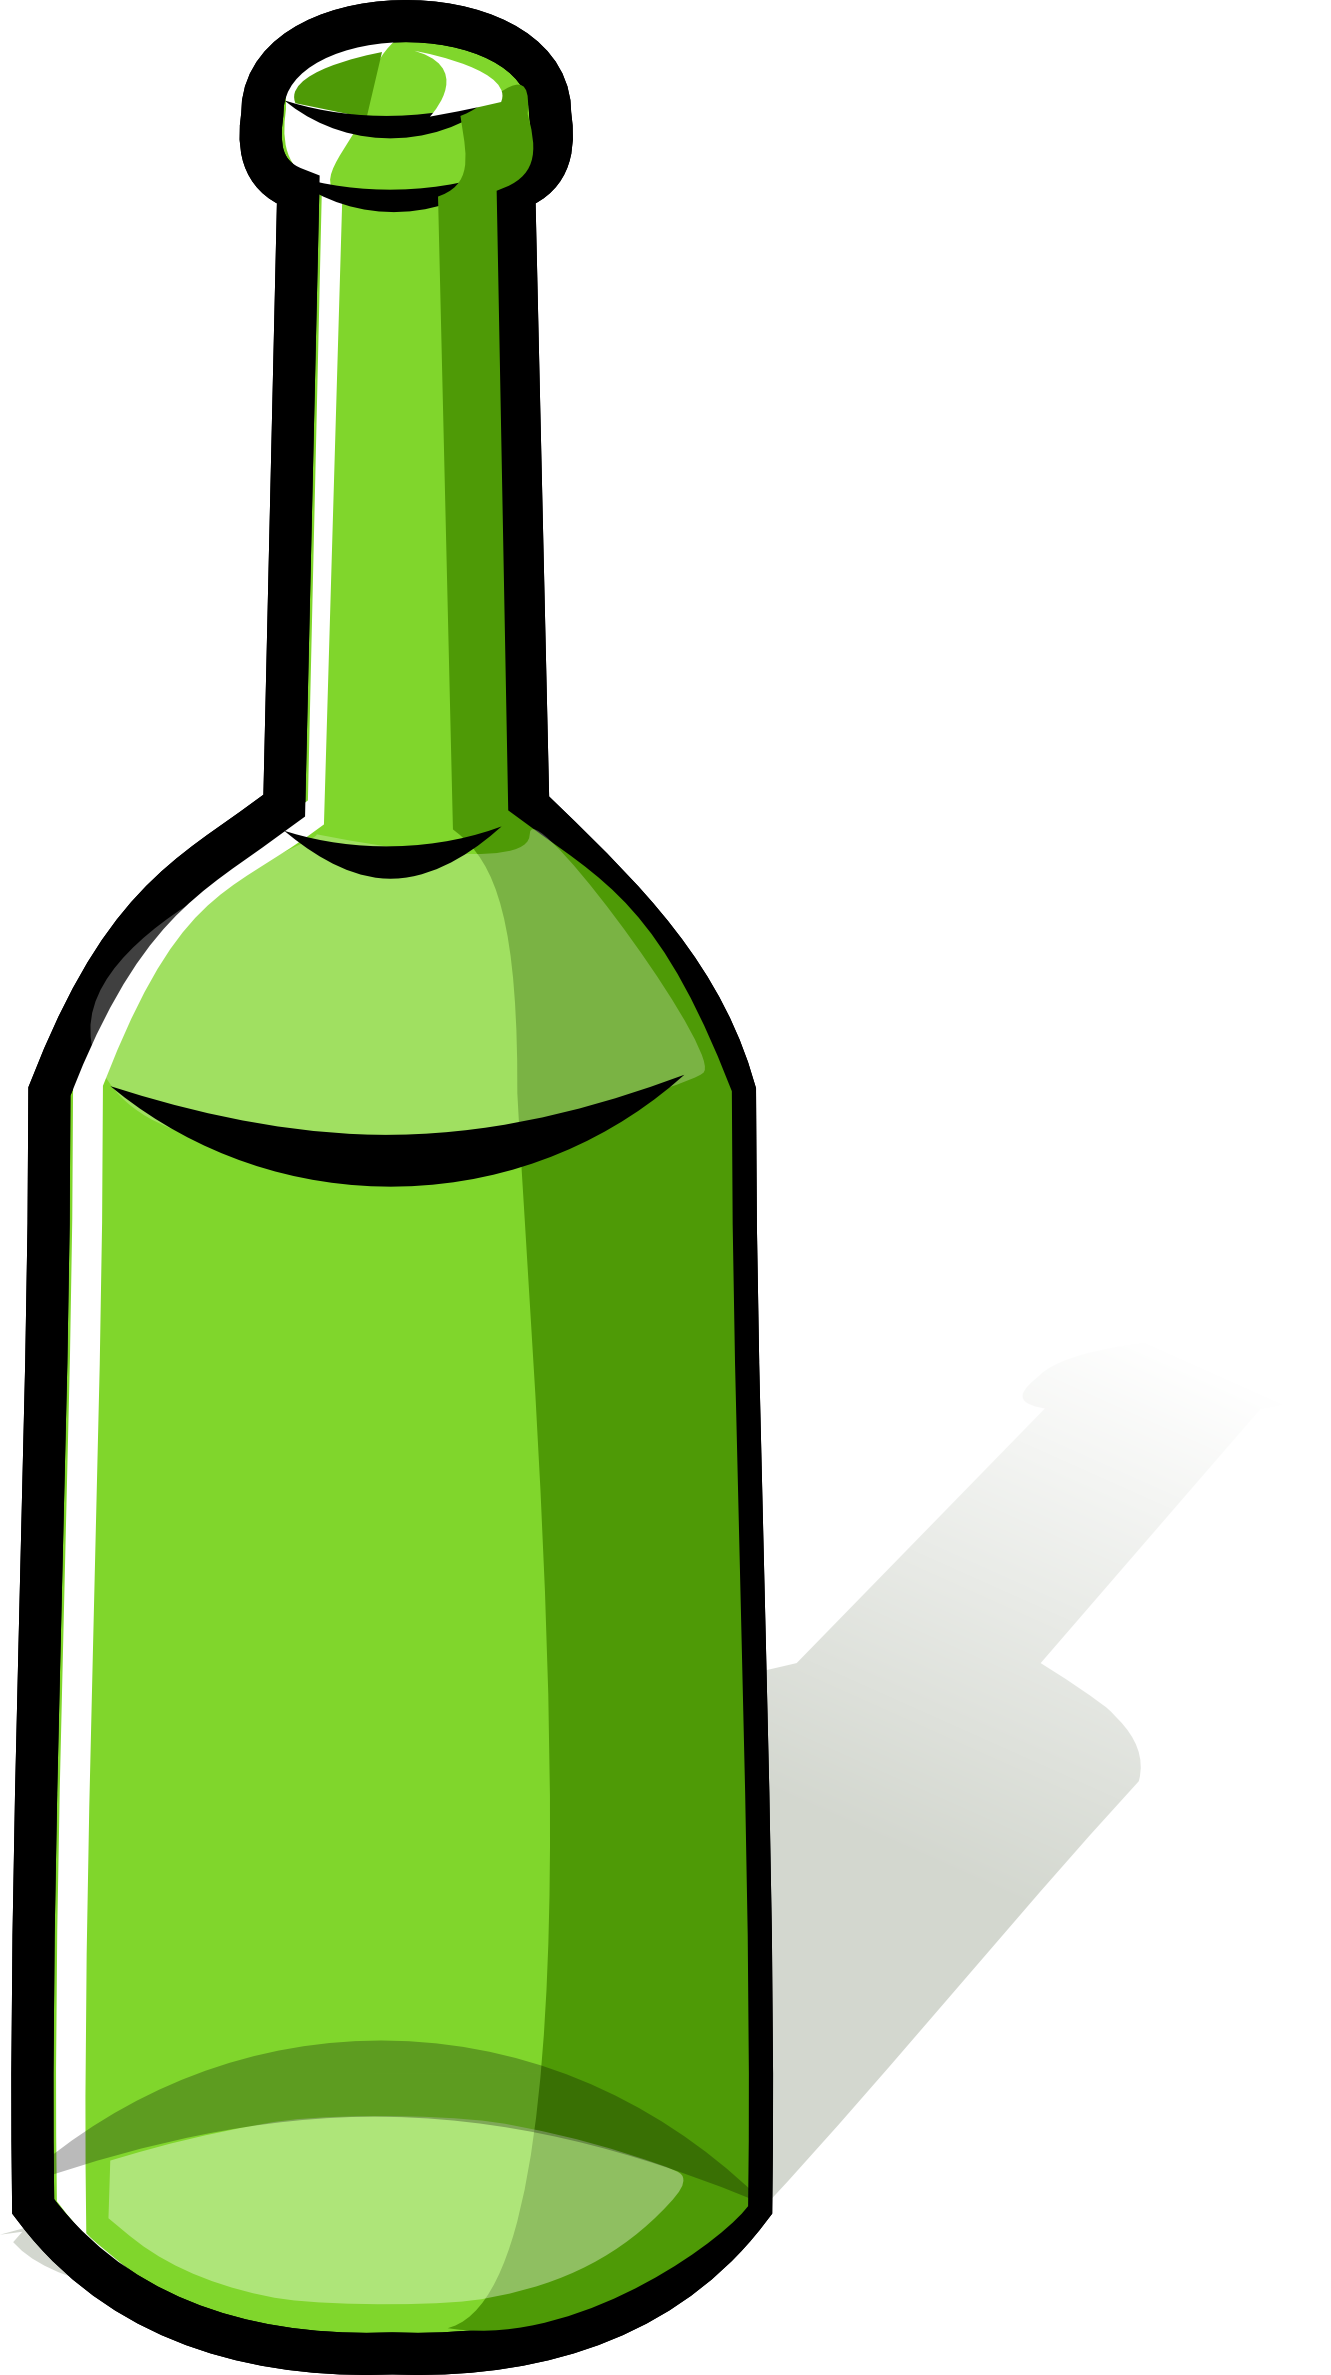 Alcohol bottle clipart